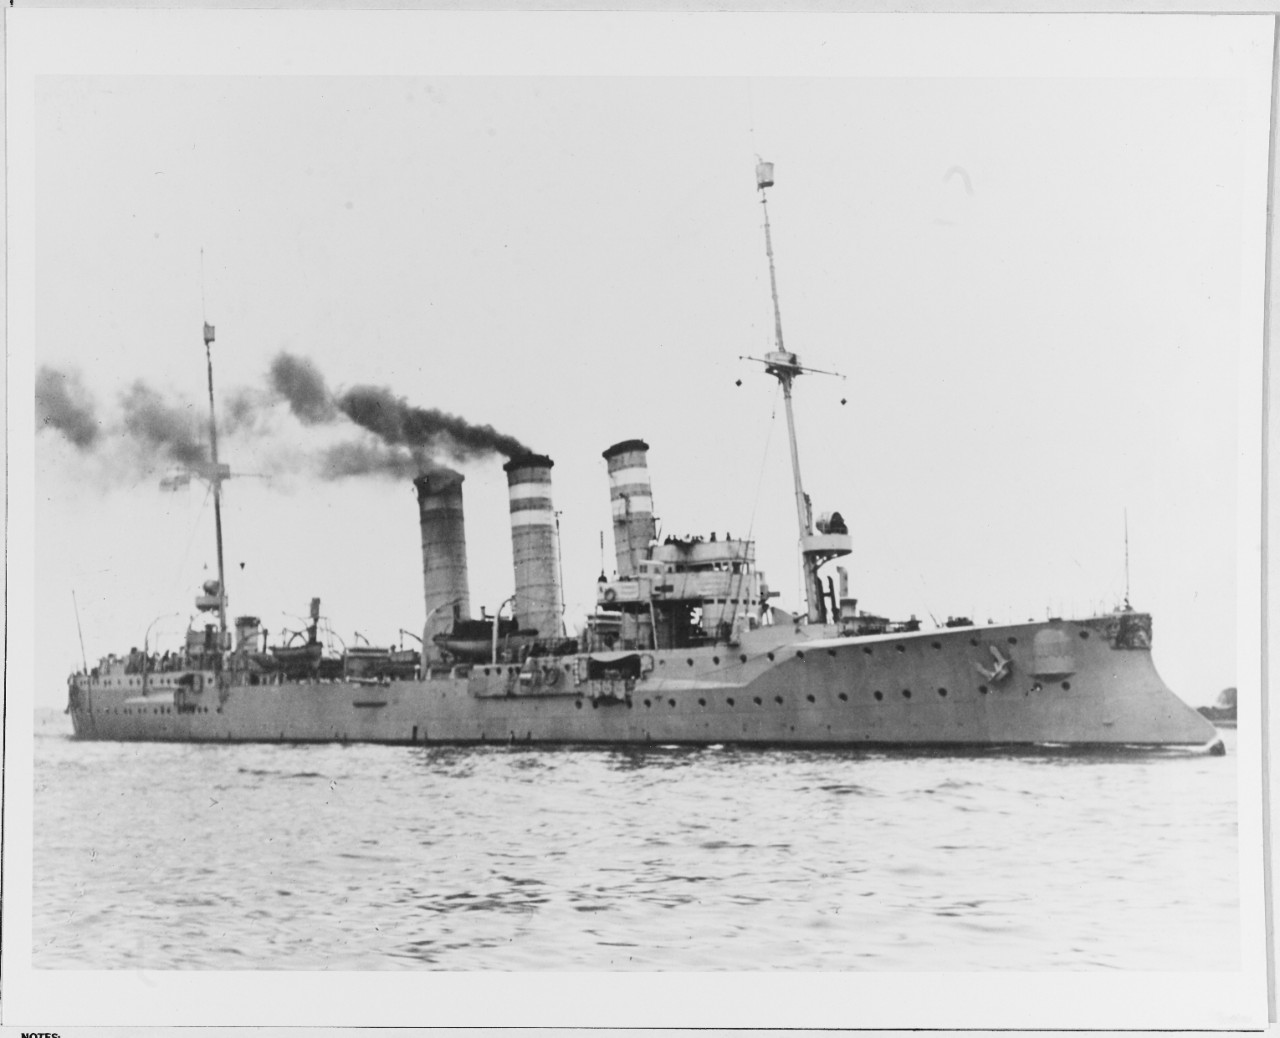 SMS BERLIN (German light cruiser, 1903)